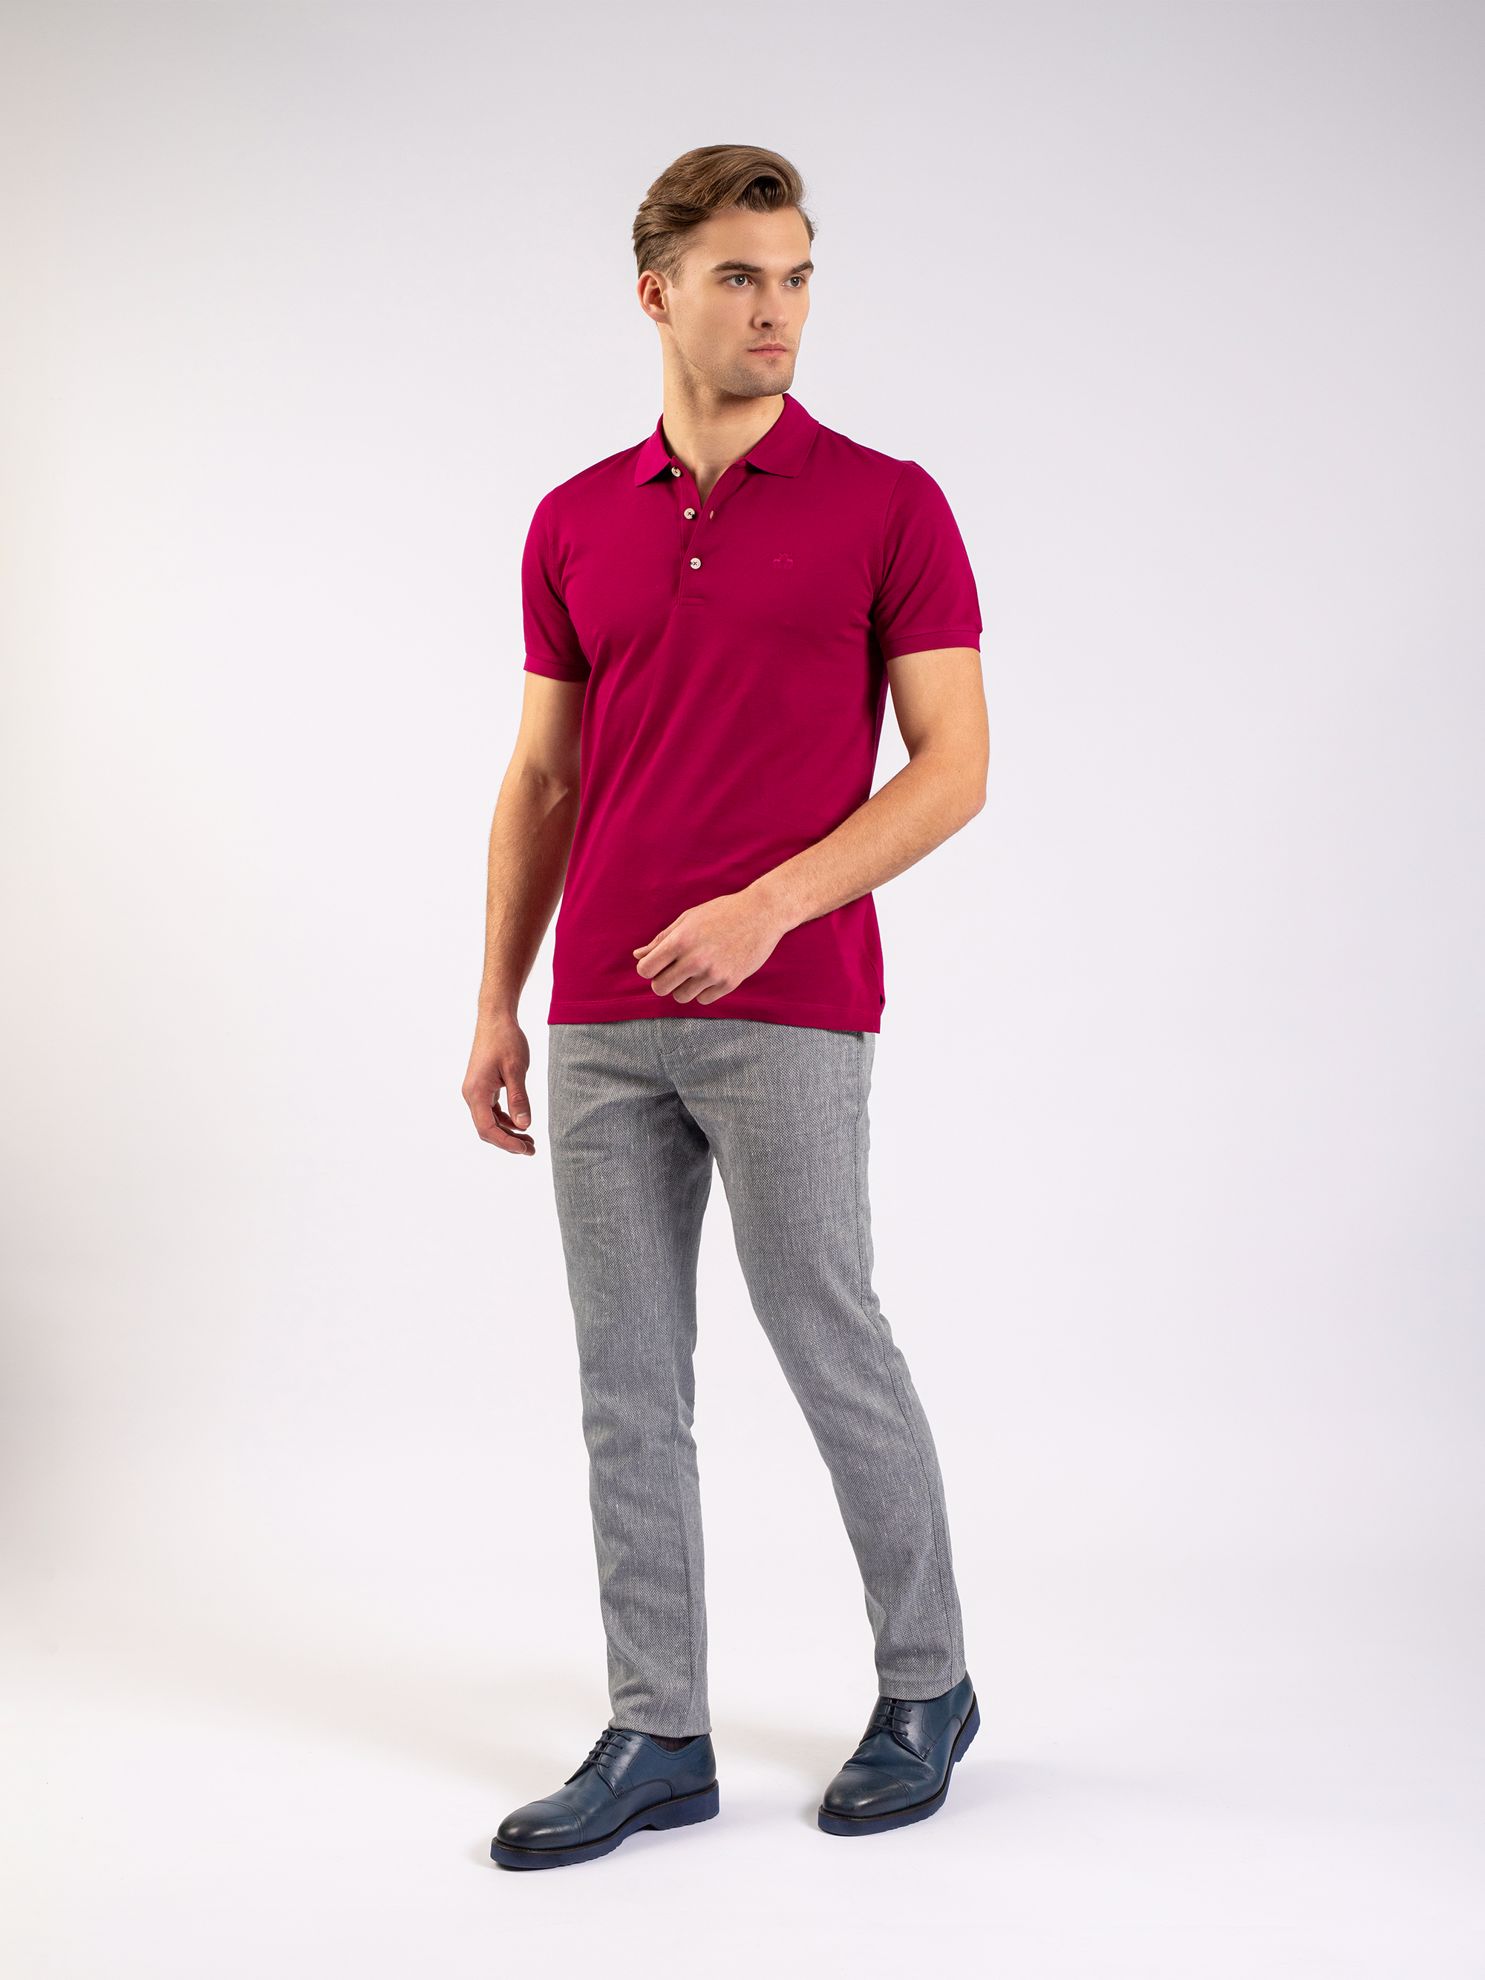 Karaca Erkek Slim Fit Polo Yaka Tişört-Fuşya. ürün görseli